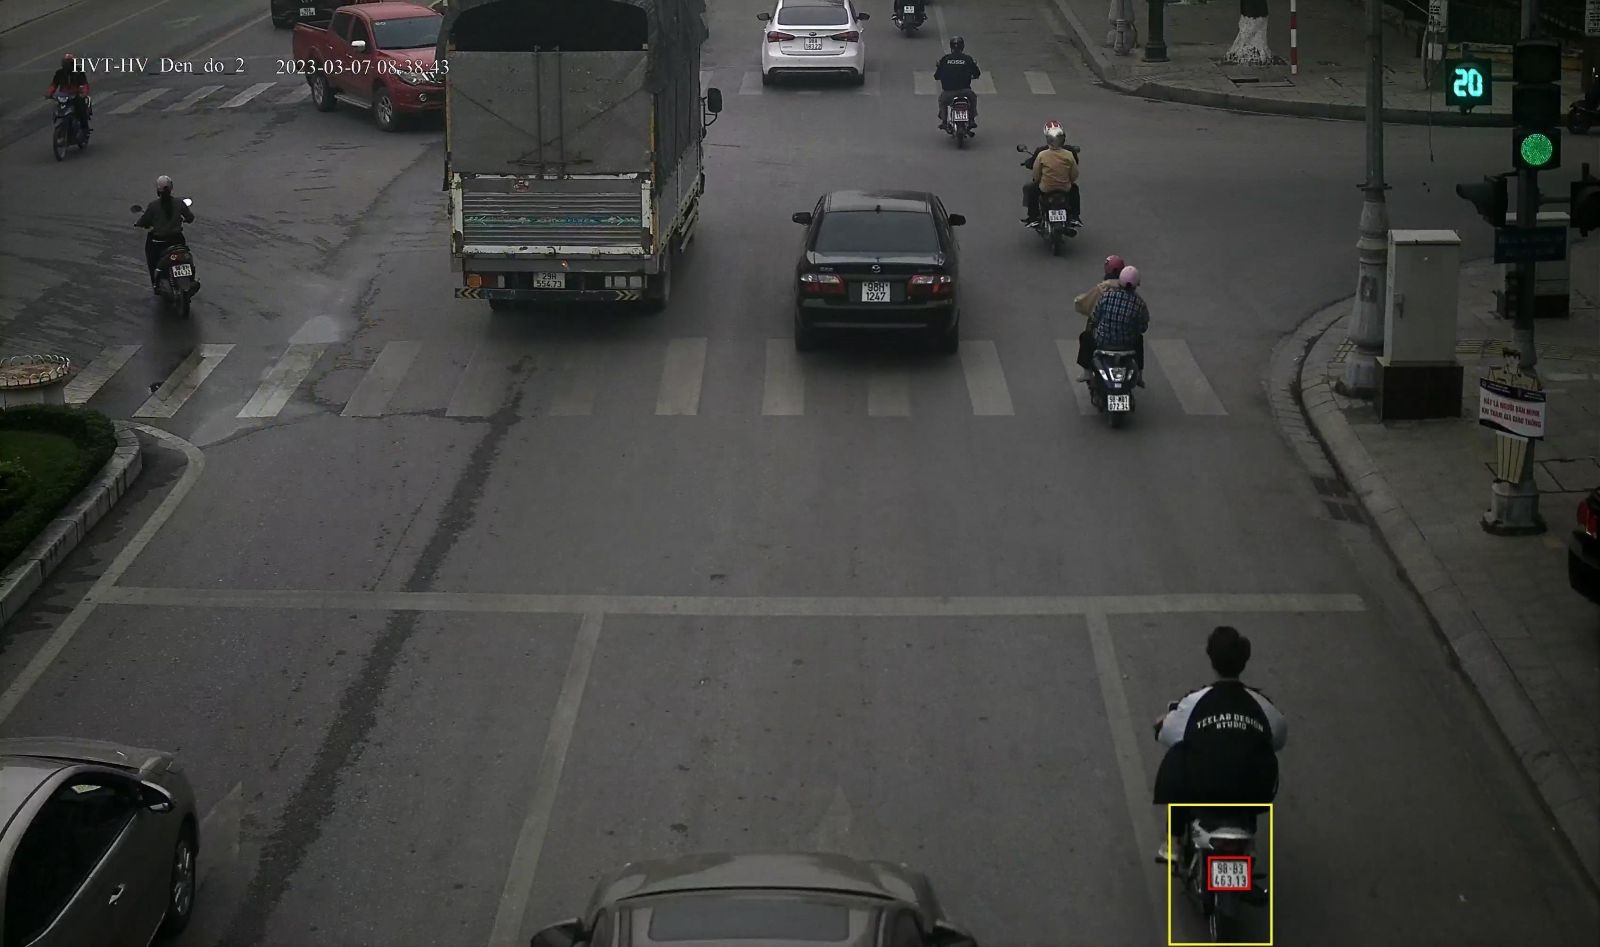 (Xe mô tô biển số 98B3-463.13 vi phạm không đội mũ bảo hiểm tại ngã tư Hùng Vương - Hoàng Văn Thụ lúc 08:38:43)